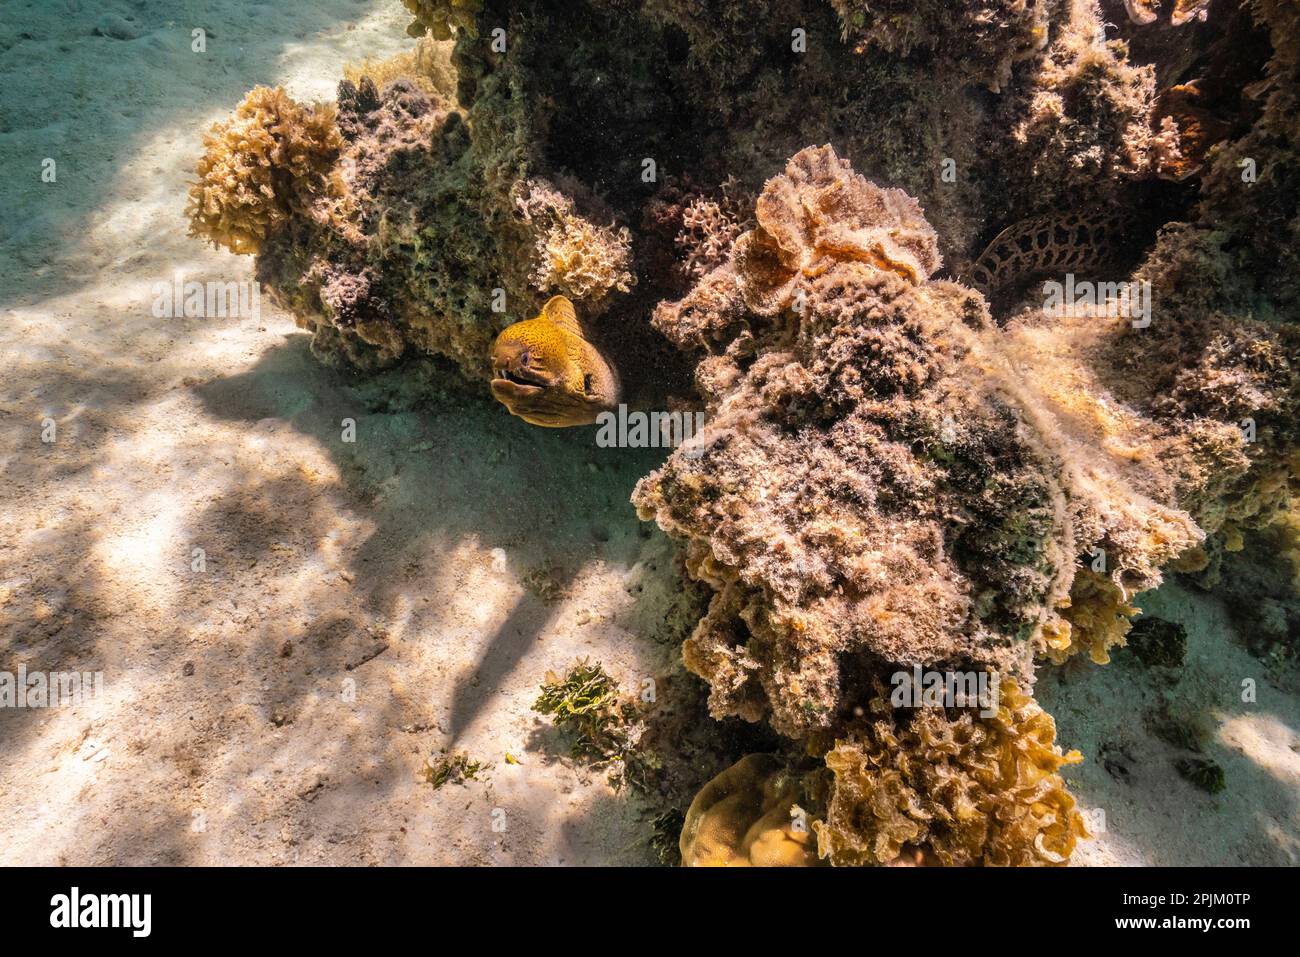 Polinesia Francese, Moorea. Primo piano dell'anguilla morena. Foto Stock